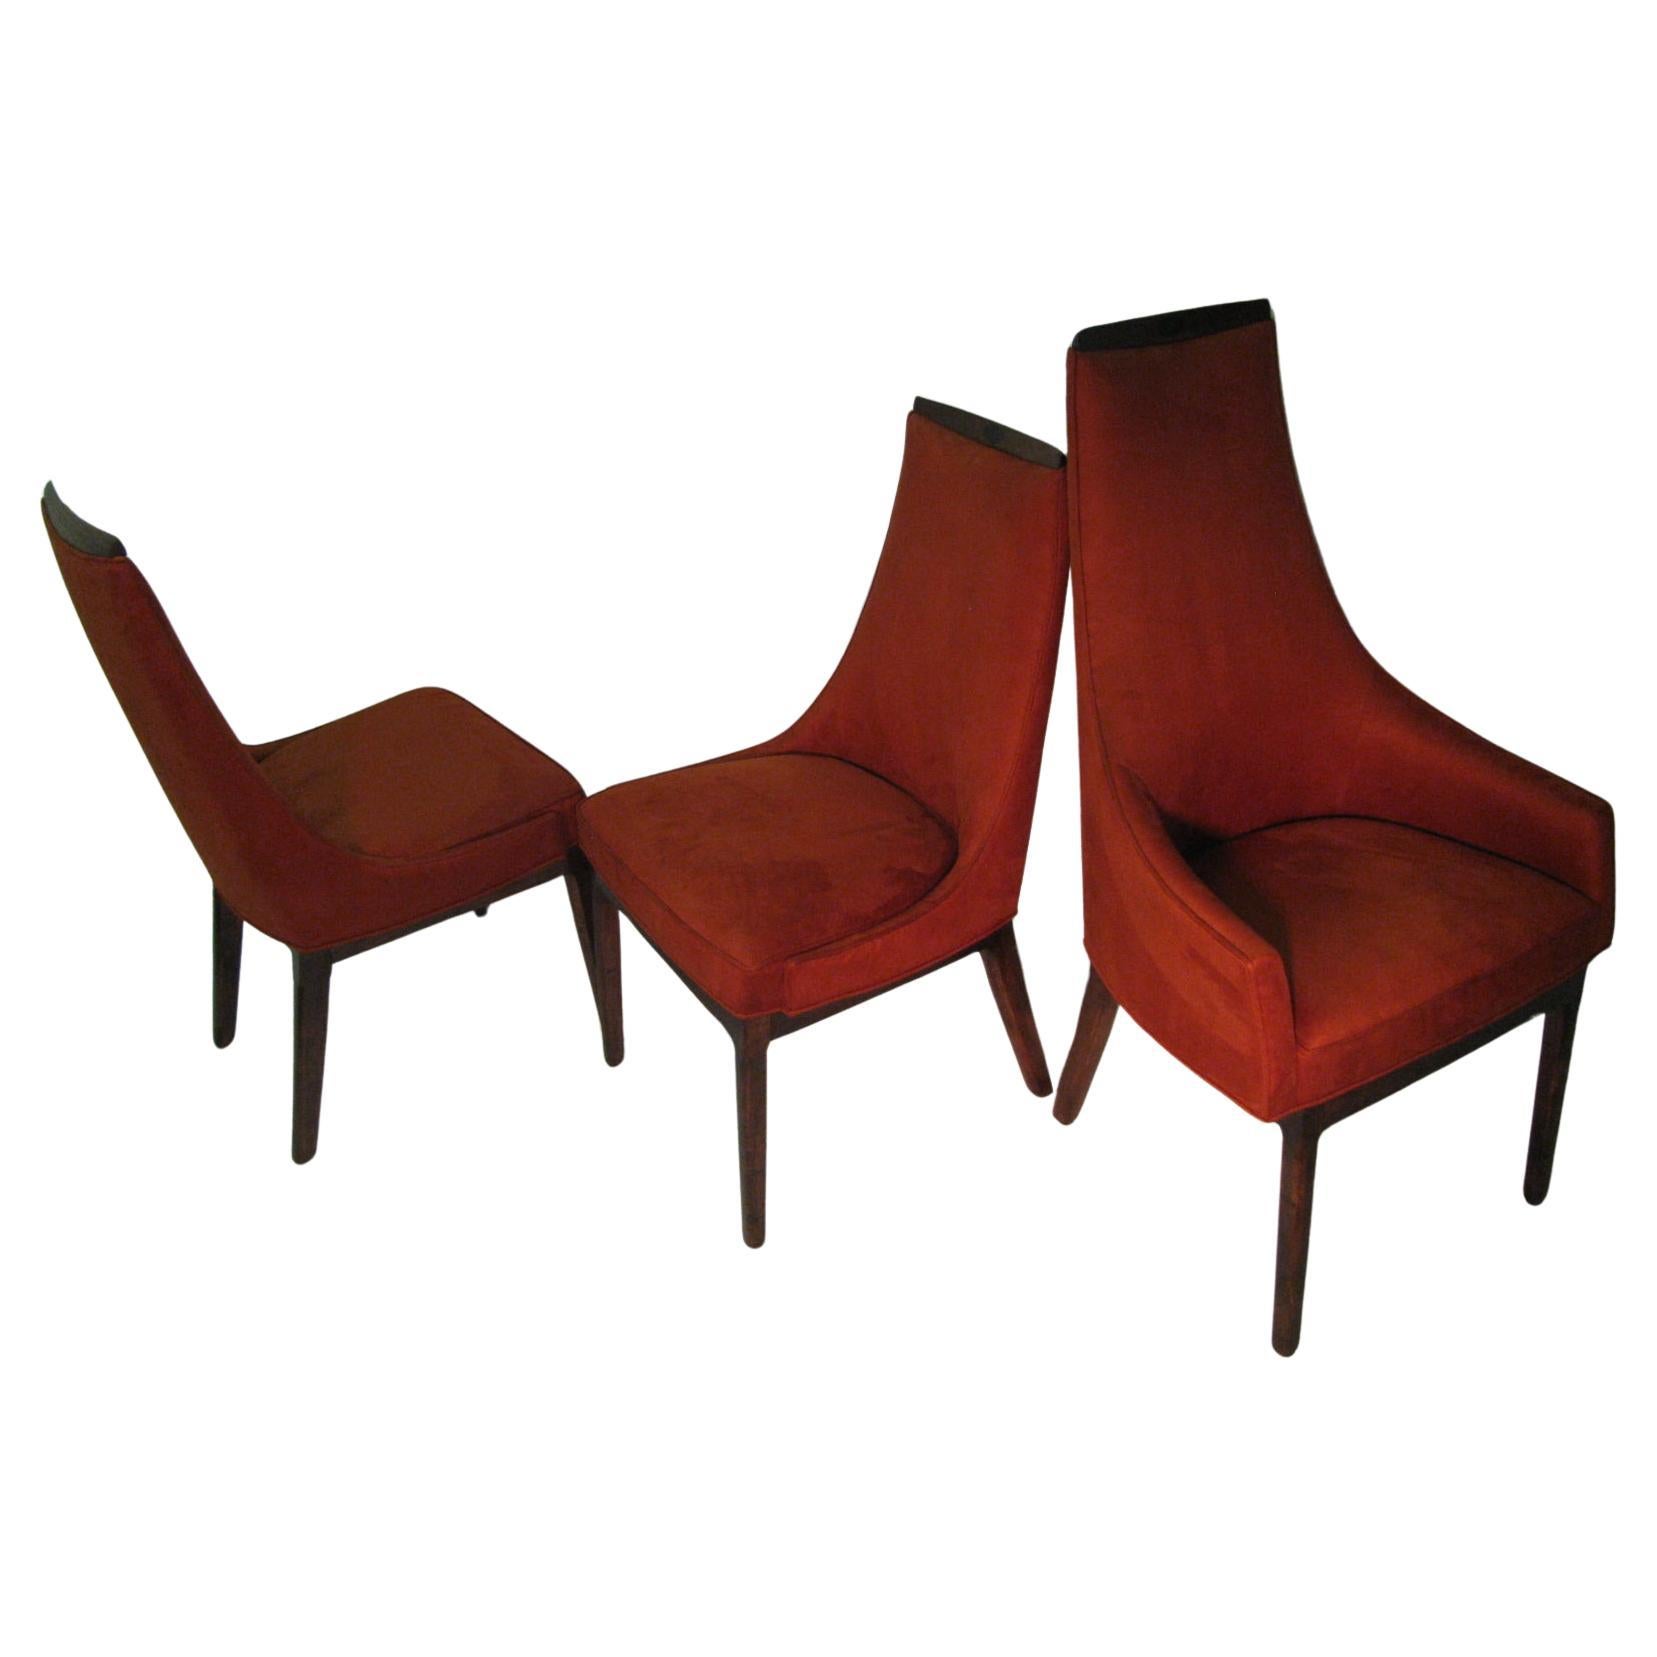 Fabuleux ensemble de six chaises totalement restaurées par Kipp Stewart pour Calvin. Refini en noyer et retapissé avec une nouvelle mousse et un tissu en velours de coton. Une conception et une fabrication de qualité, bien construites et très